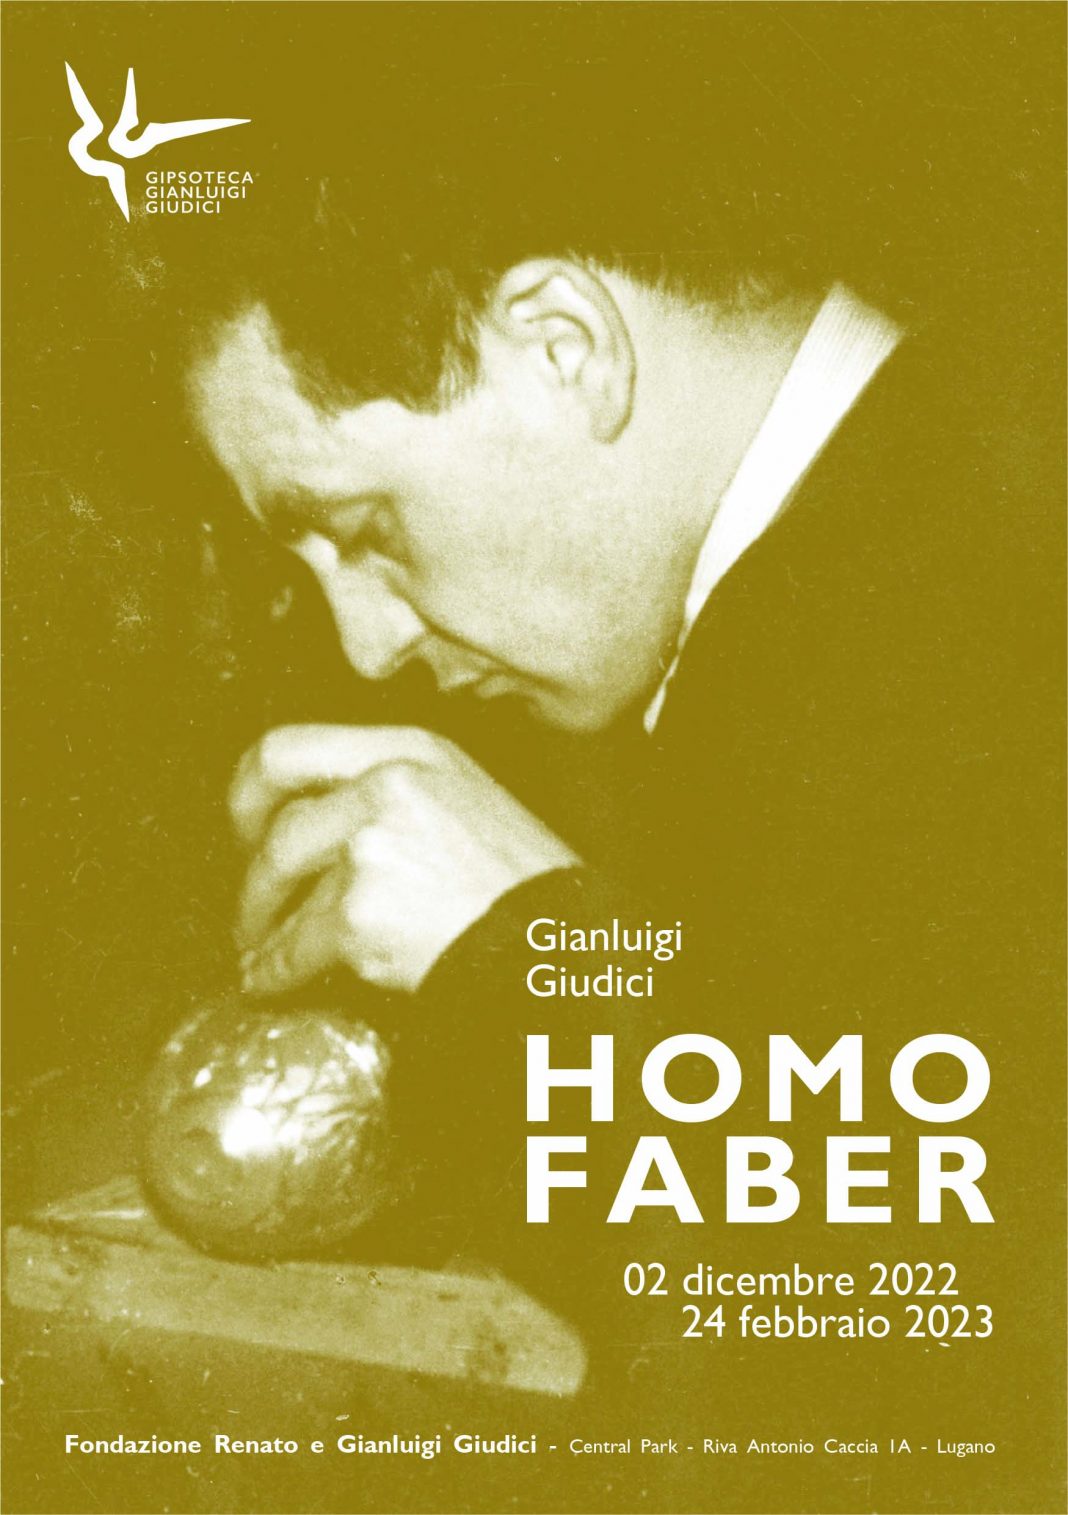 Gianluigi Giudici – Homo Faberhttps://www.exibart.com/repository/media/formidable/11/img/94e/fronte-invito-1068x1515.jpg